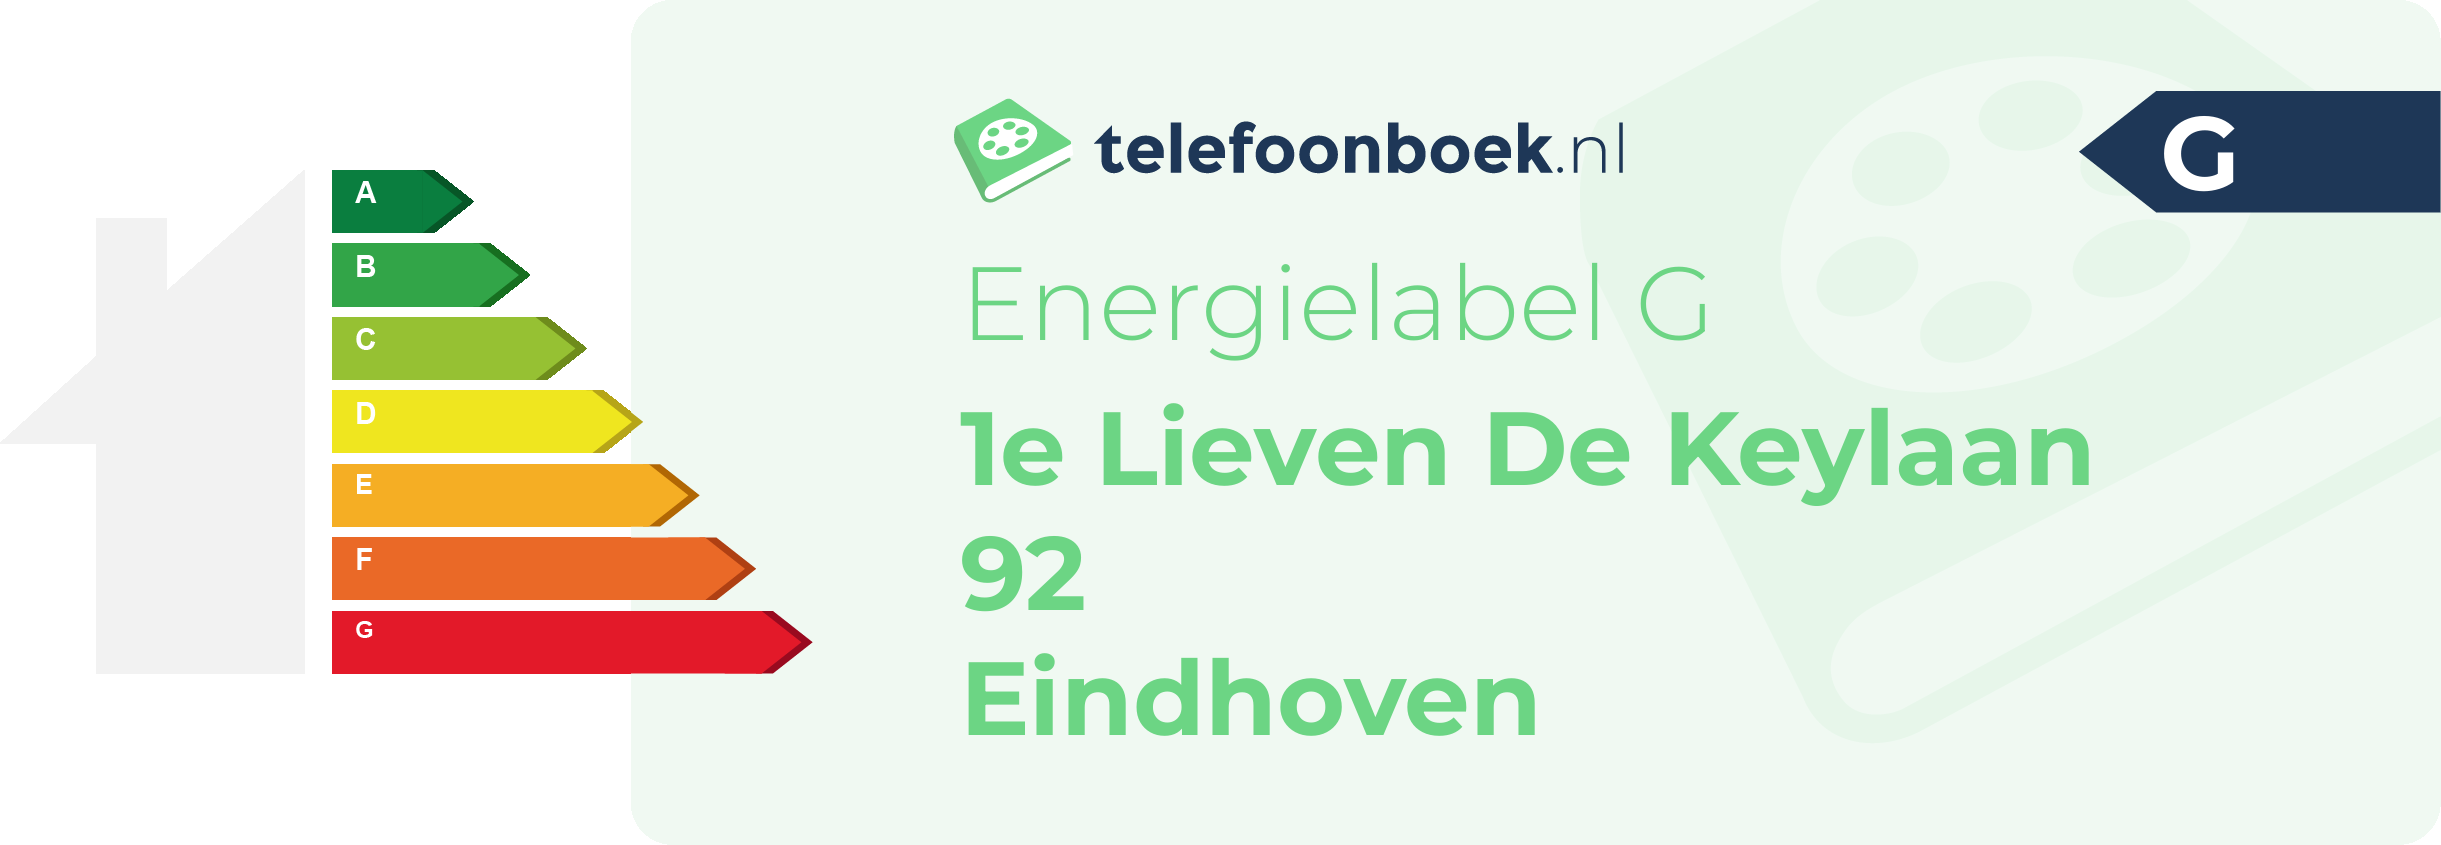 Energielabel 1e Lieven De Keylaan 92 Eindhoven